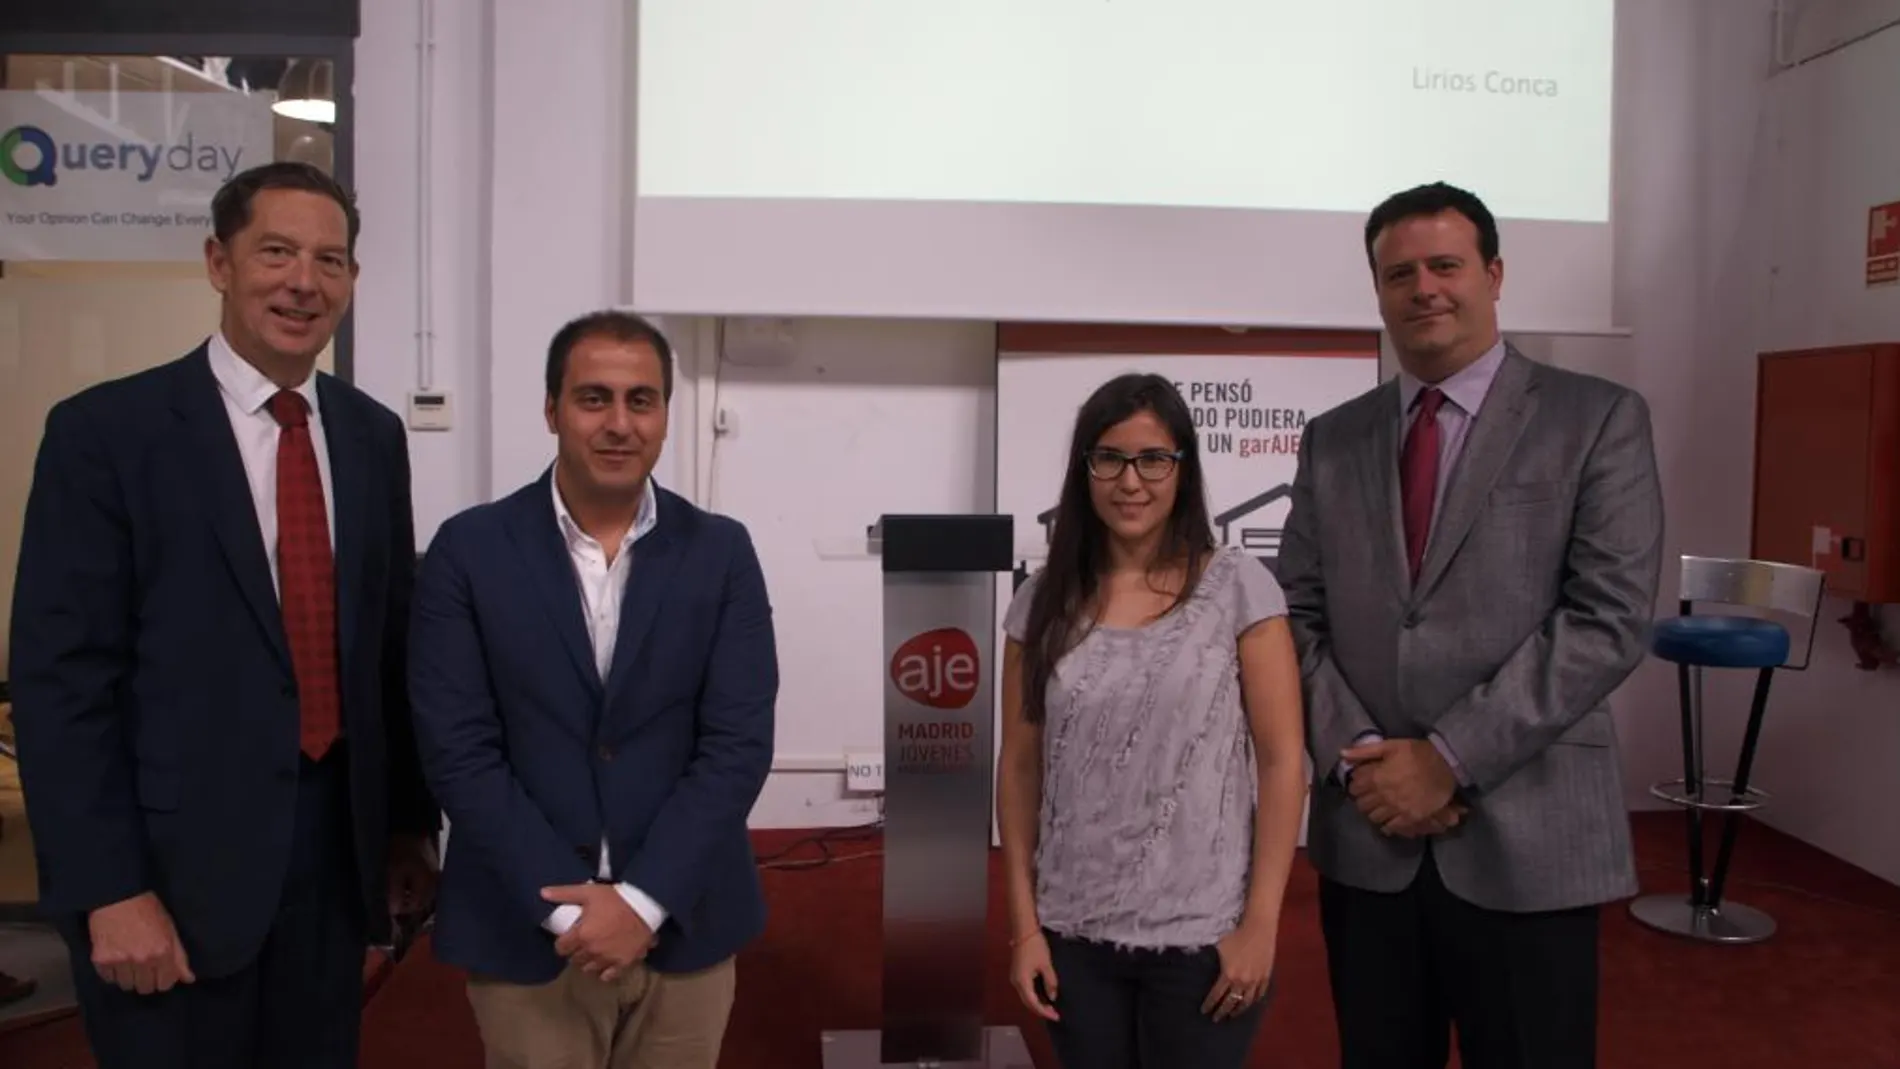 Nicolás Mouze (DHL), Fran Gallego (Royal Comunicación), Lirios Conca (Google), Jose Luis González (Banco Sabadell)